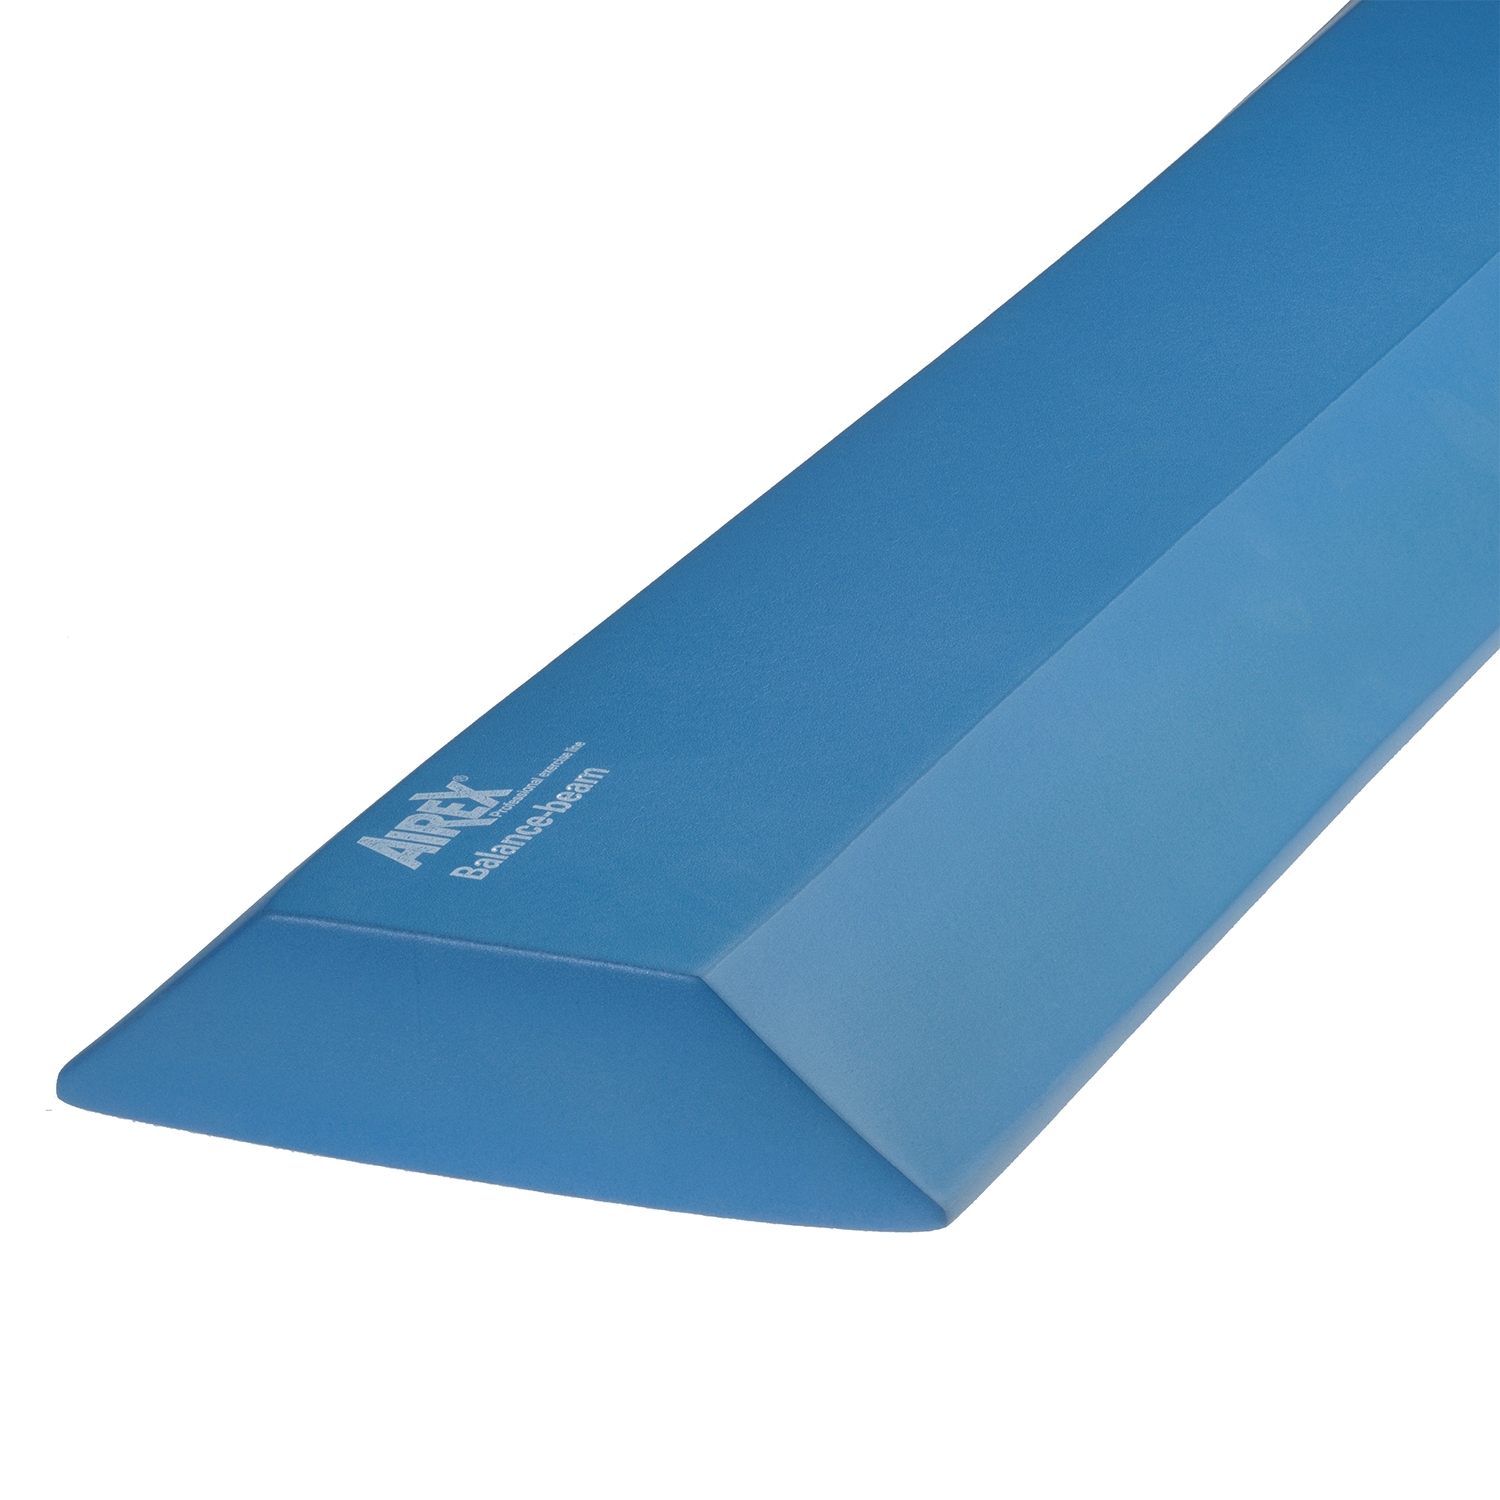 Airex Balance Beam - 160 x 24 x 6 cm - bleu